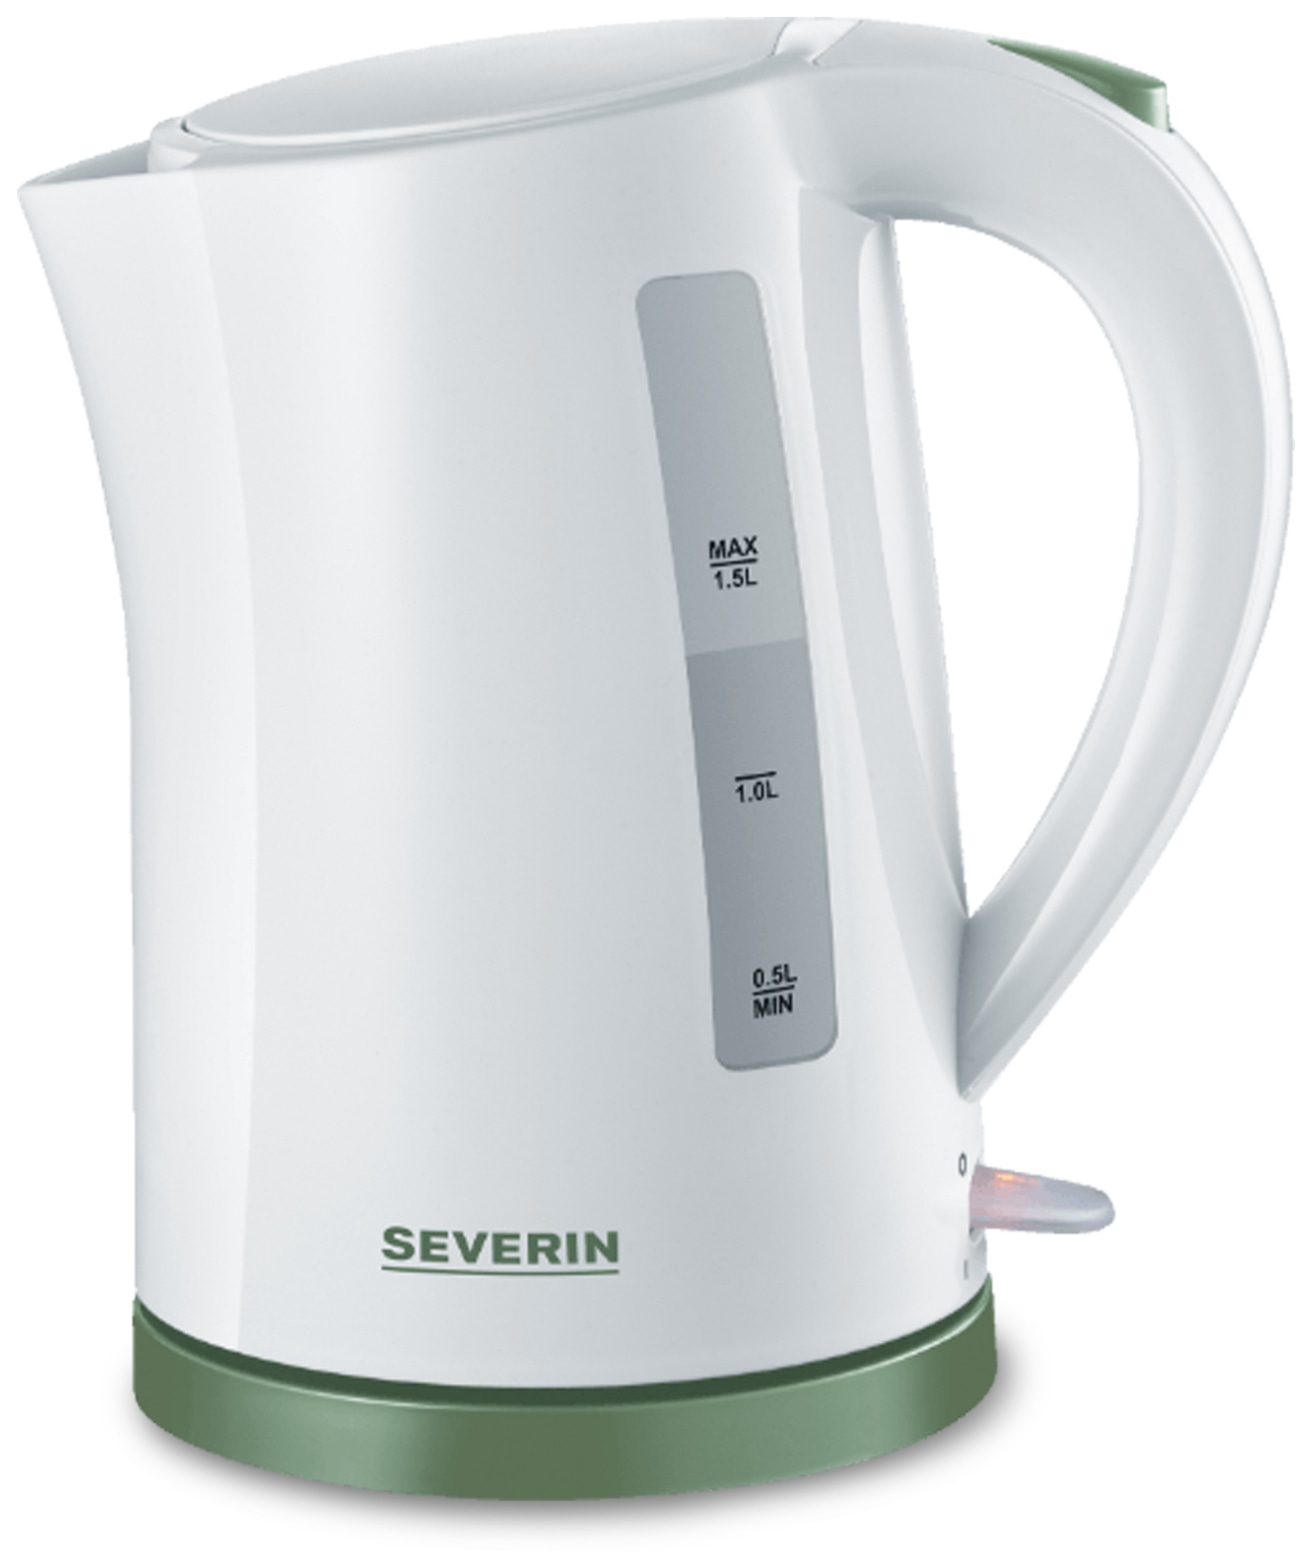 Severin Wasserkocher 9931, weiß/grün, 1,5 L, 2200 W